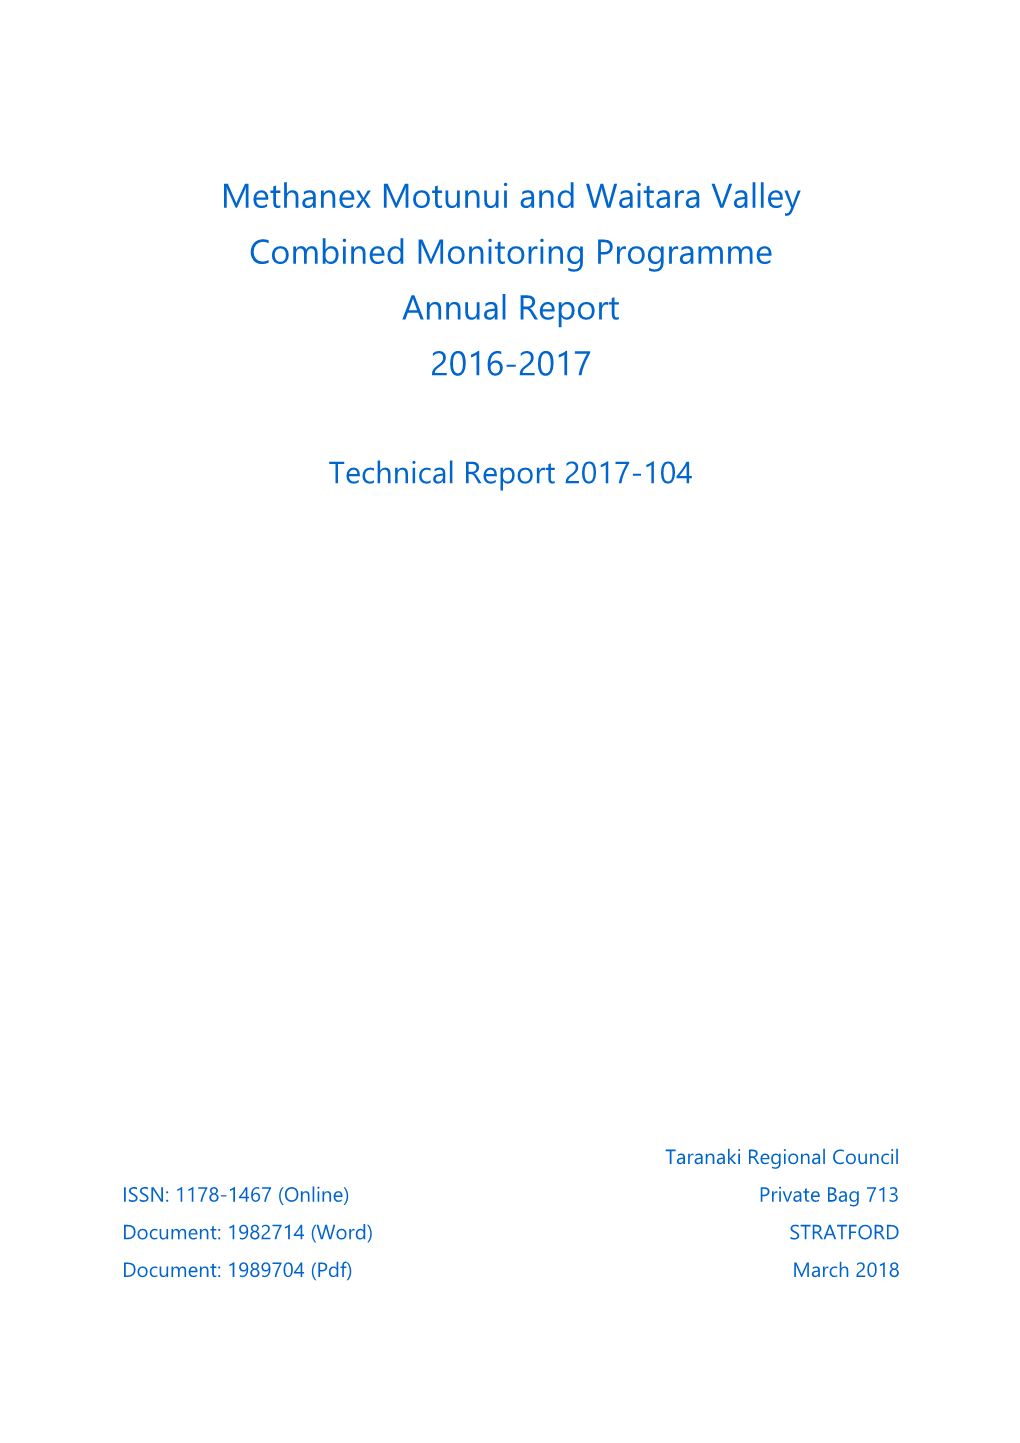 Methanex Motunui and Waitara Valey Consent Monitoring Report